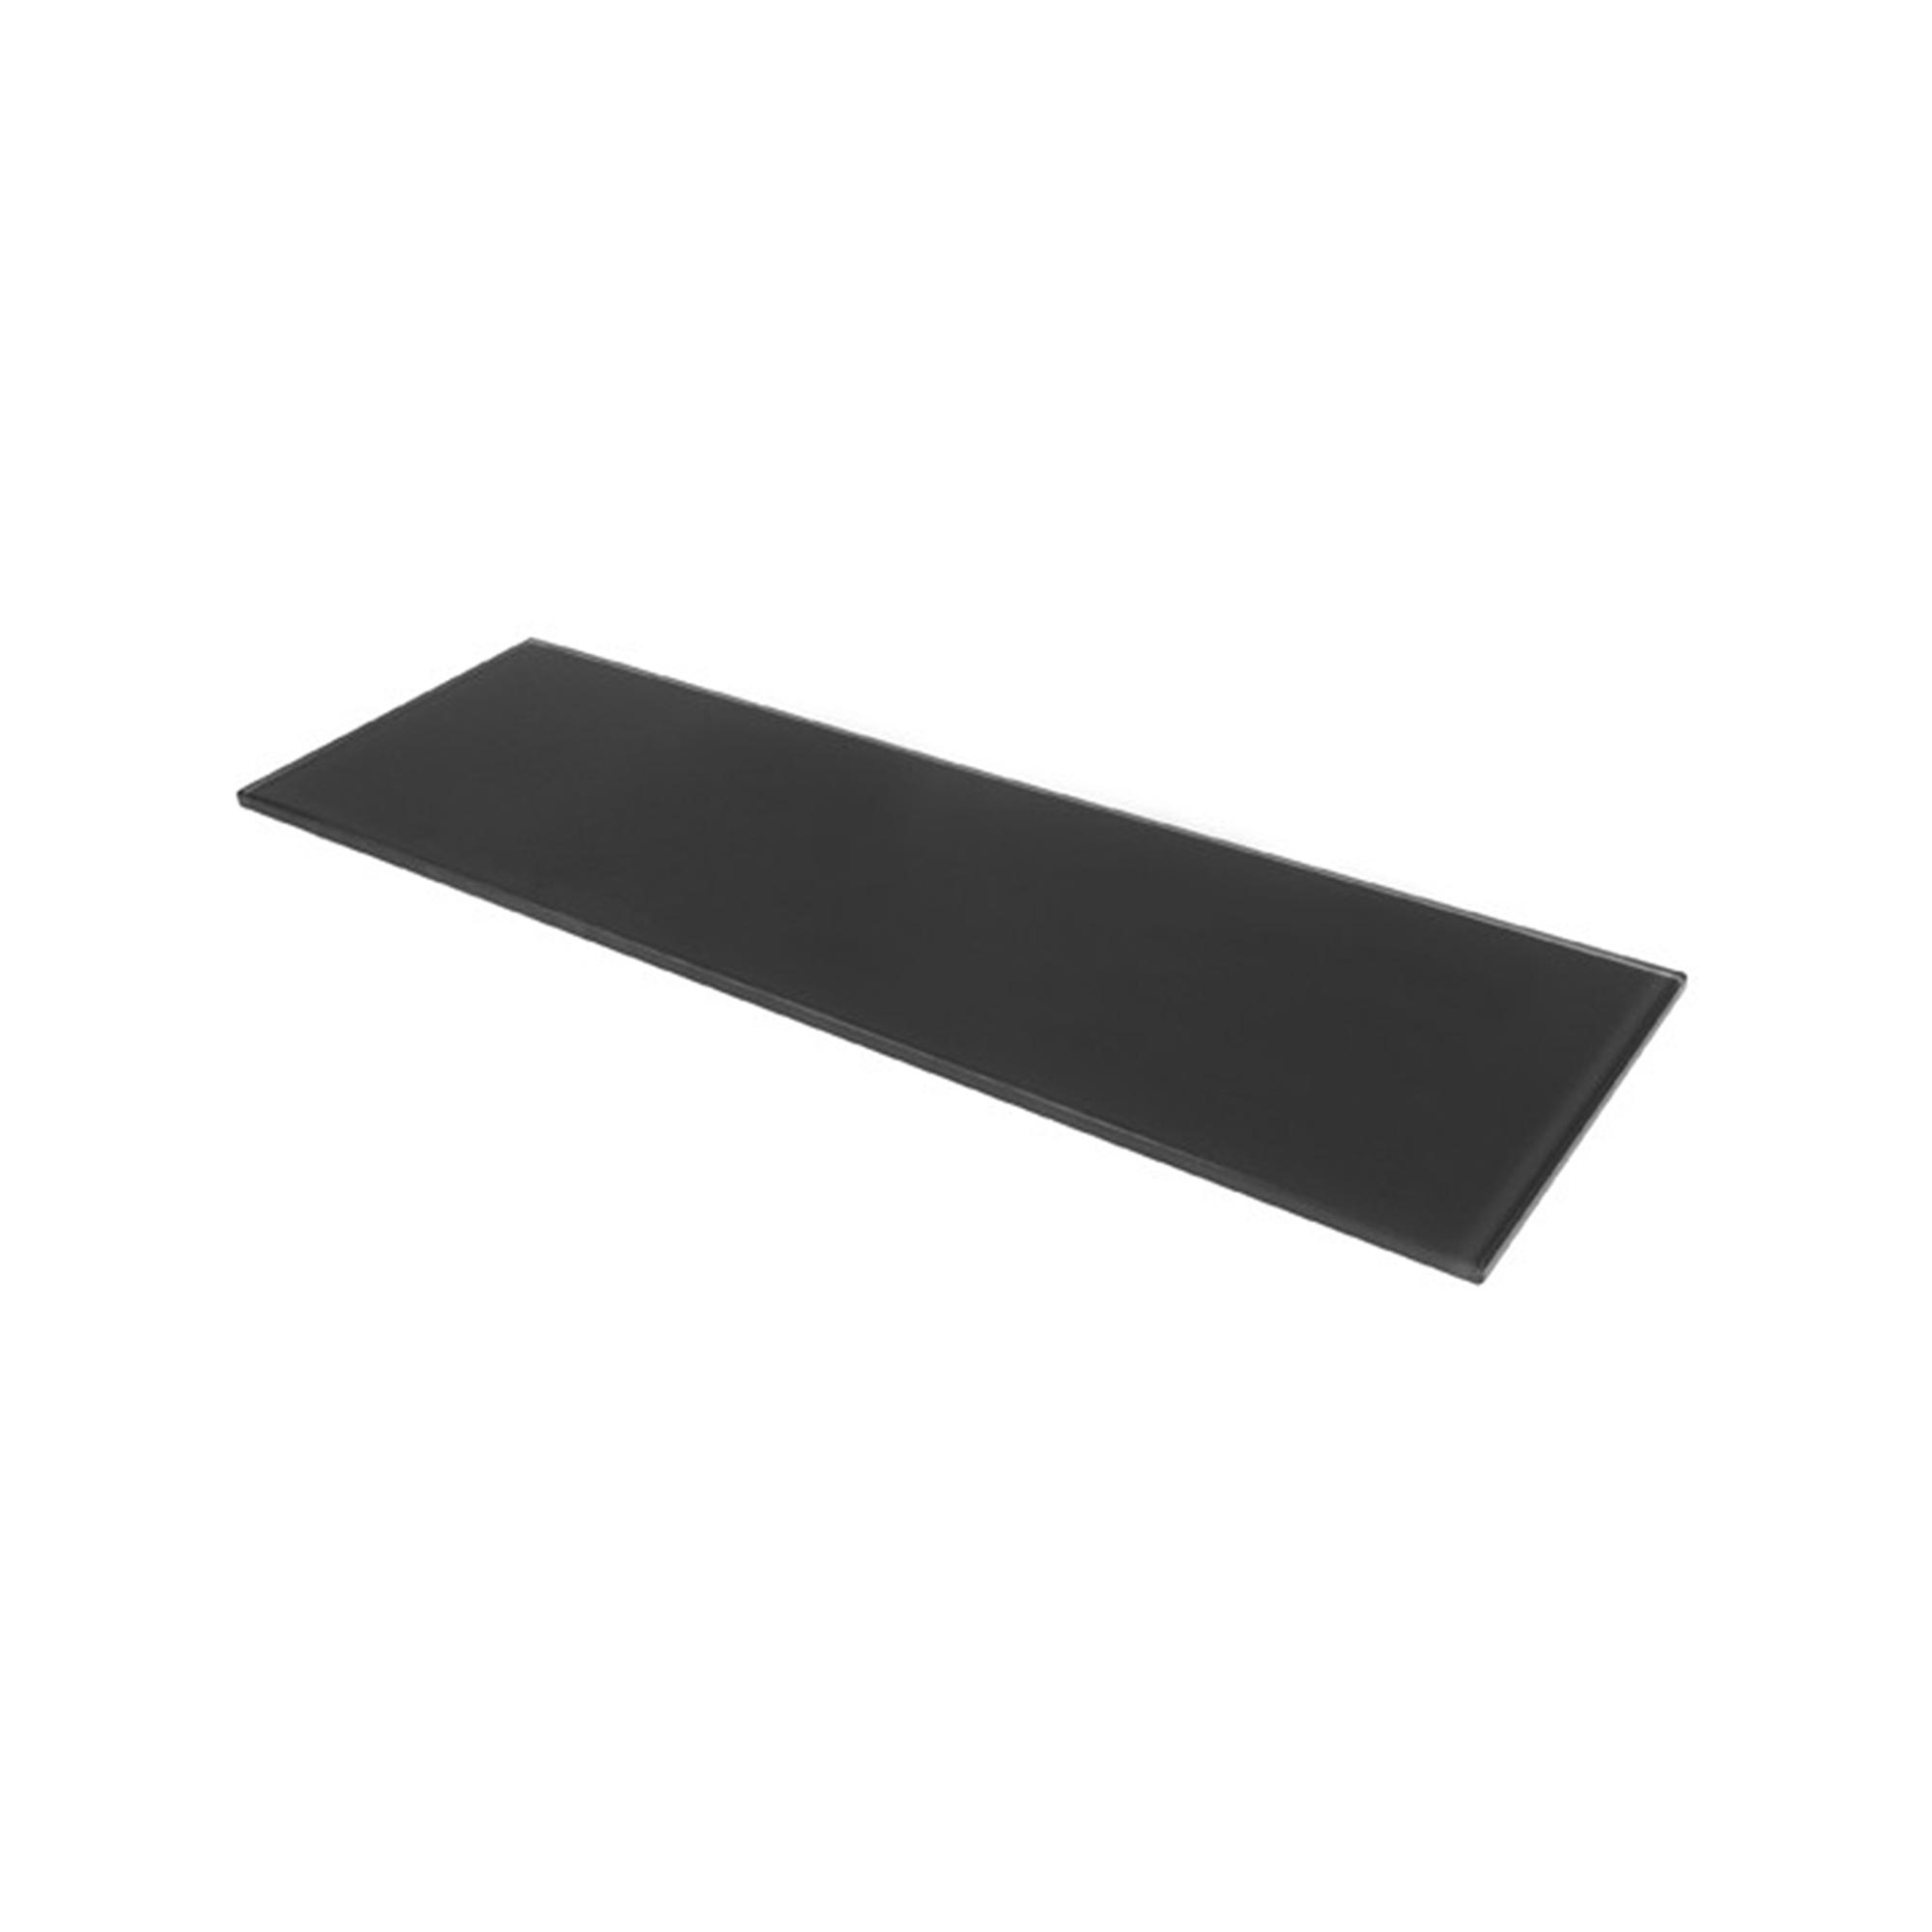 Étagère rectangulaire en verre Finition noire | Mesures 450*6*120mm | Épaisseur de l'étagère : 6 mm | 1 unité